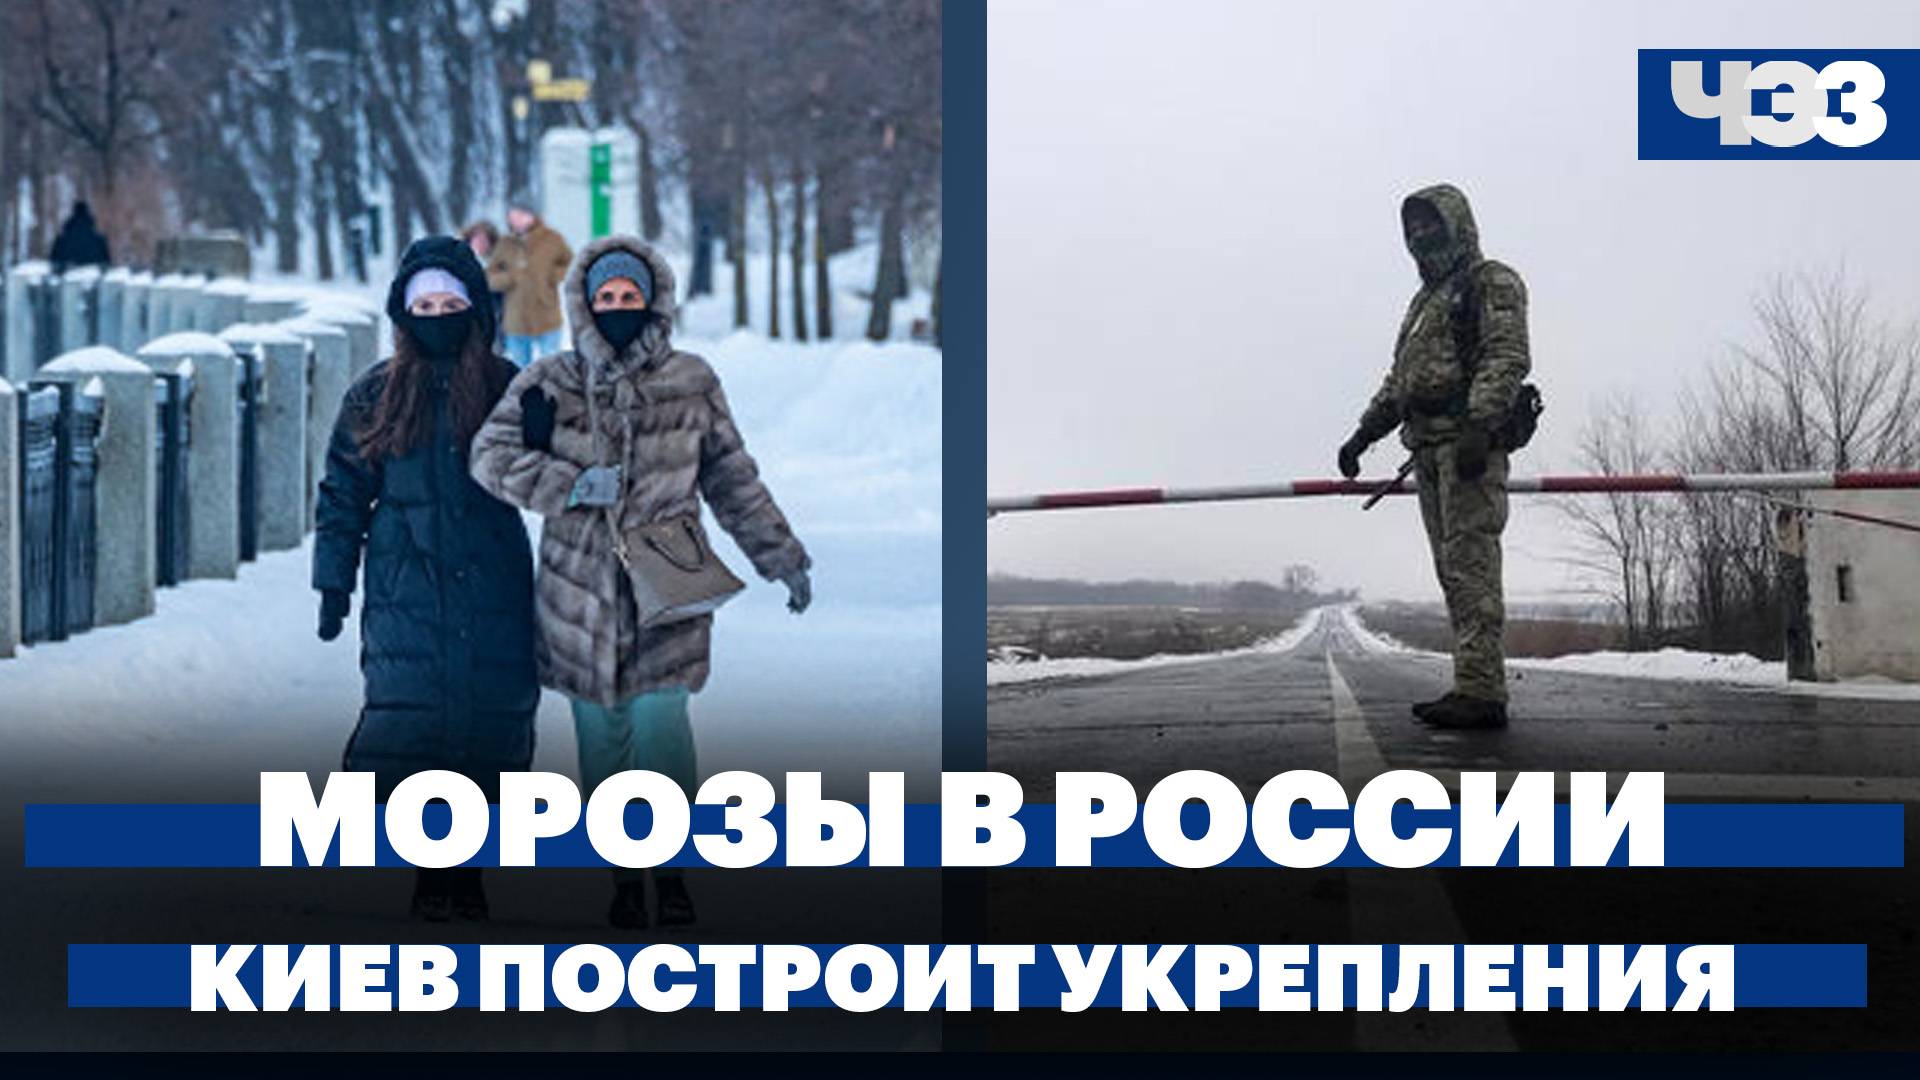 Киев построит укрепления от Донбасса до Западной Украины. Аномальные морозы в России